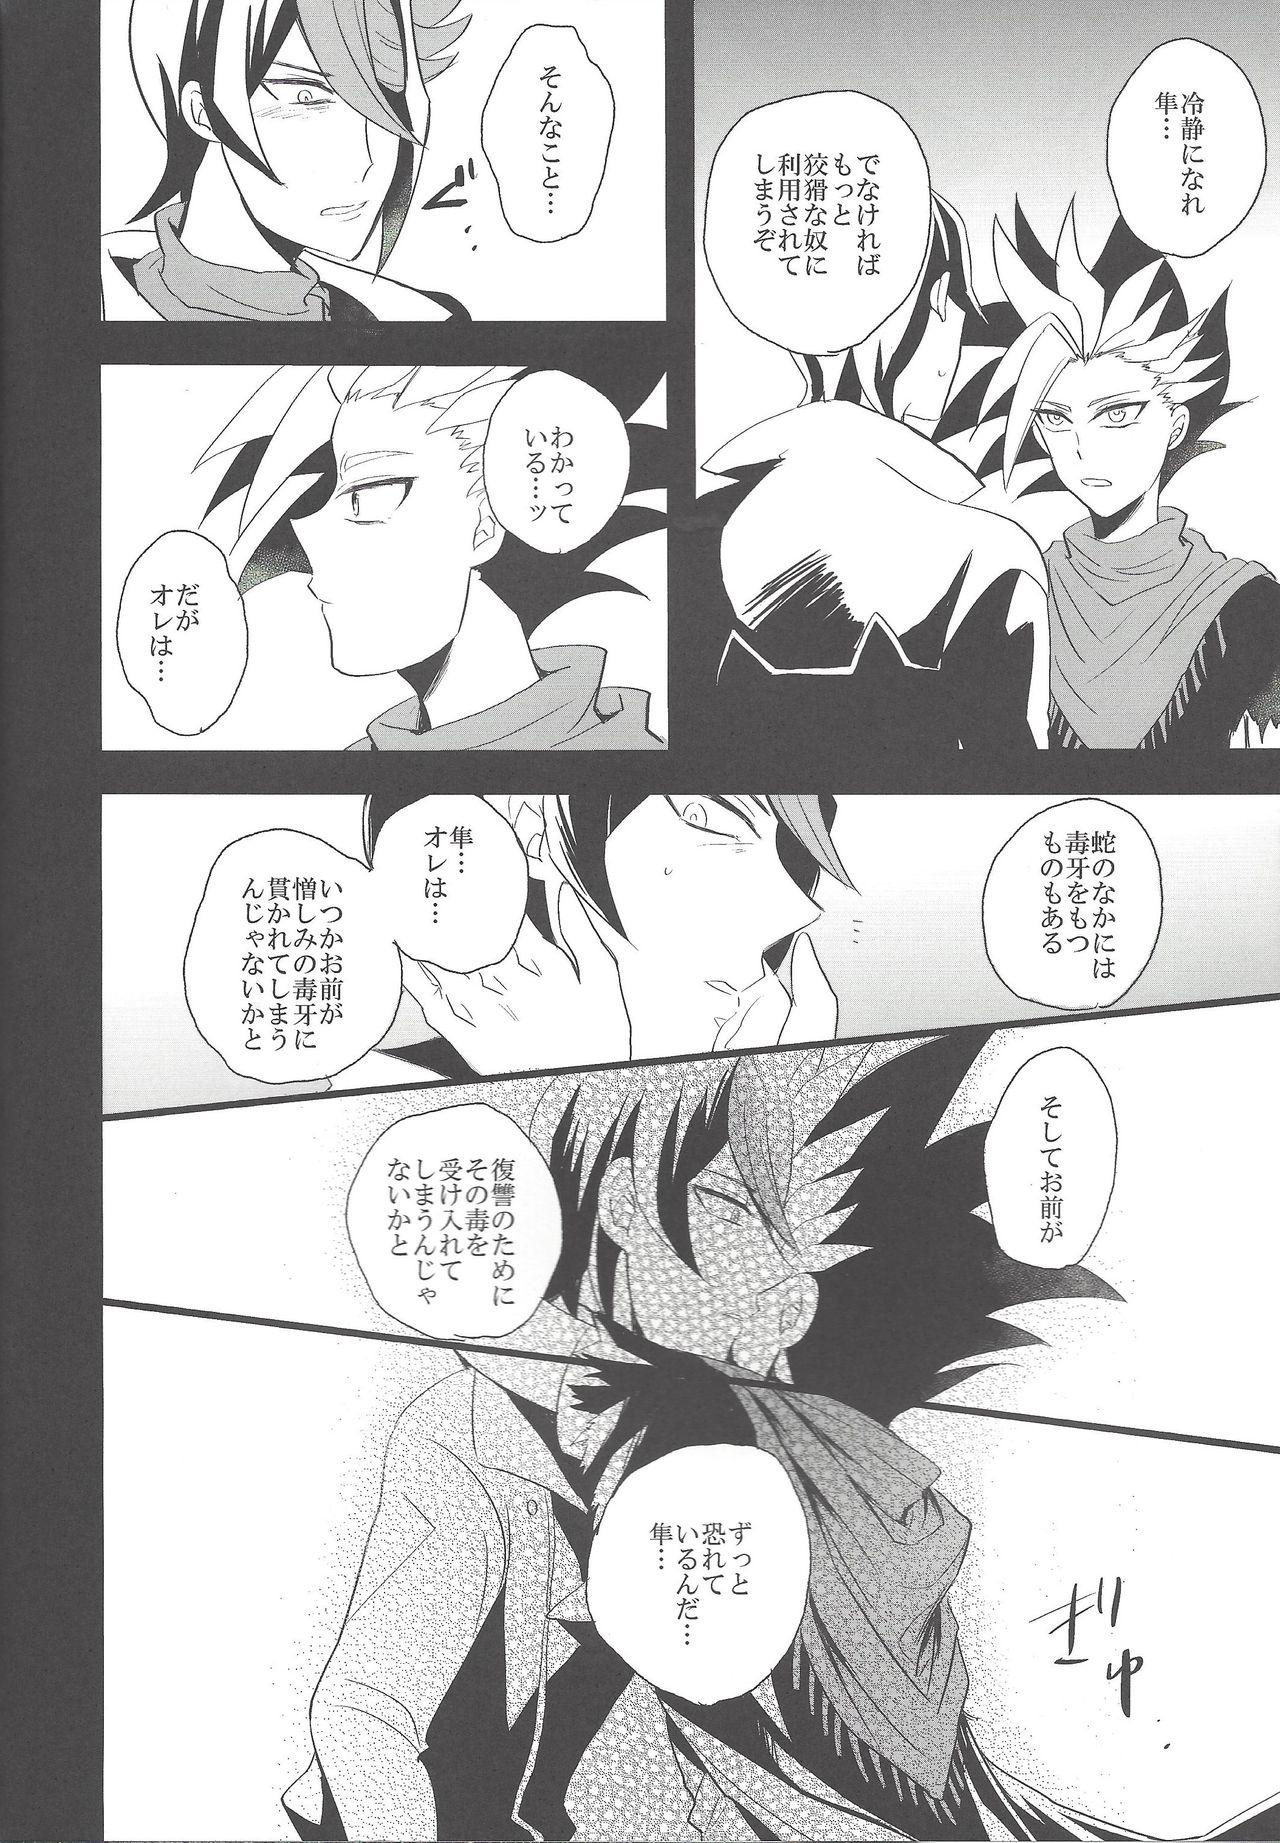 Lingerie Hebi no Doku, shitatari ochiru wa Mitsu no Aji - Yu gi oh arc v Gay Broken - Page 7